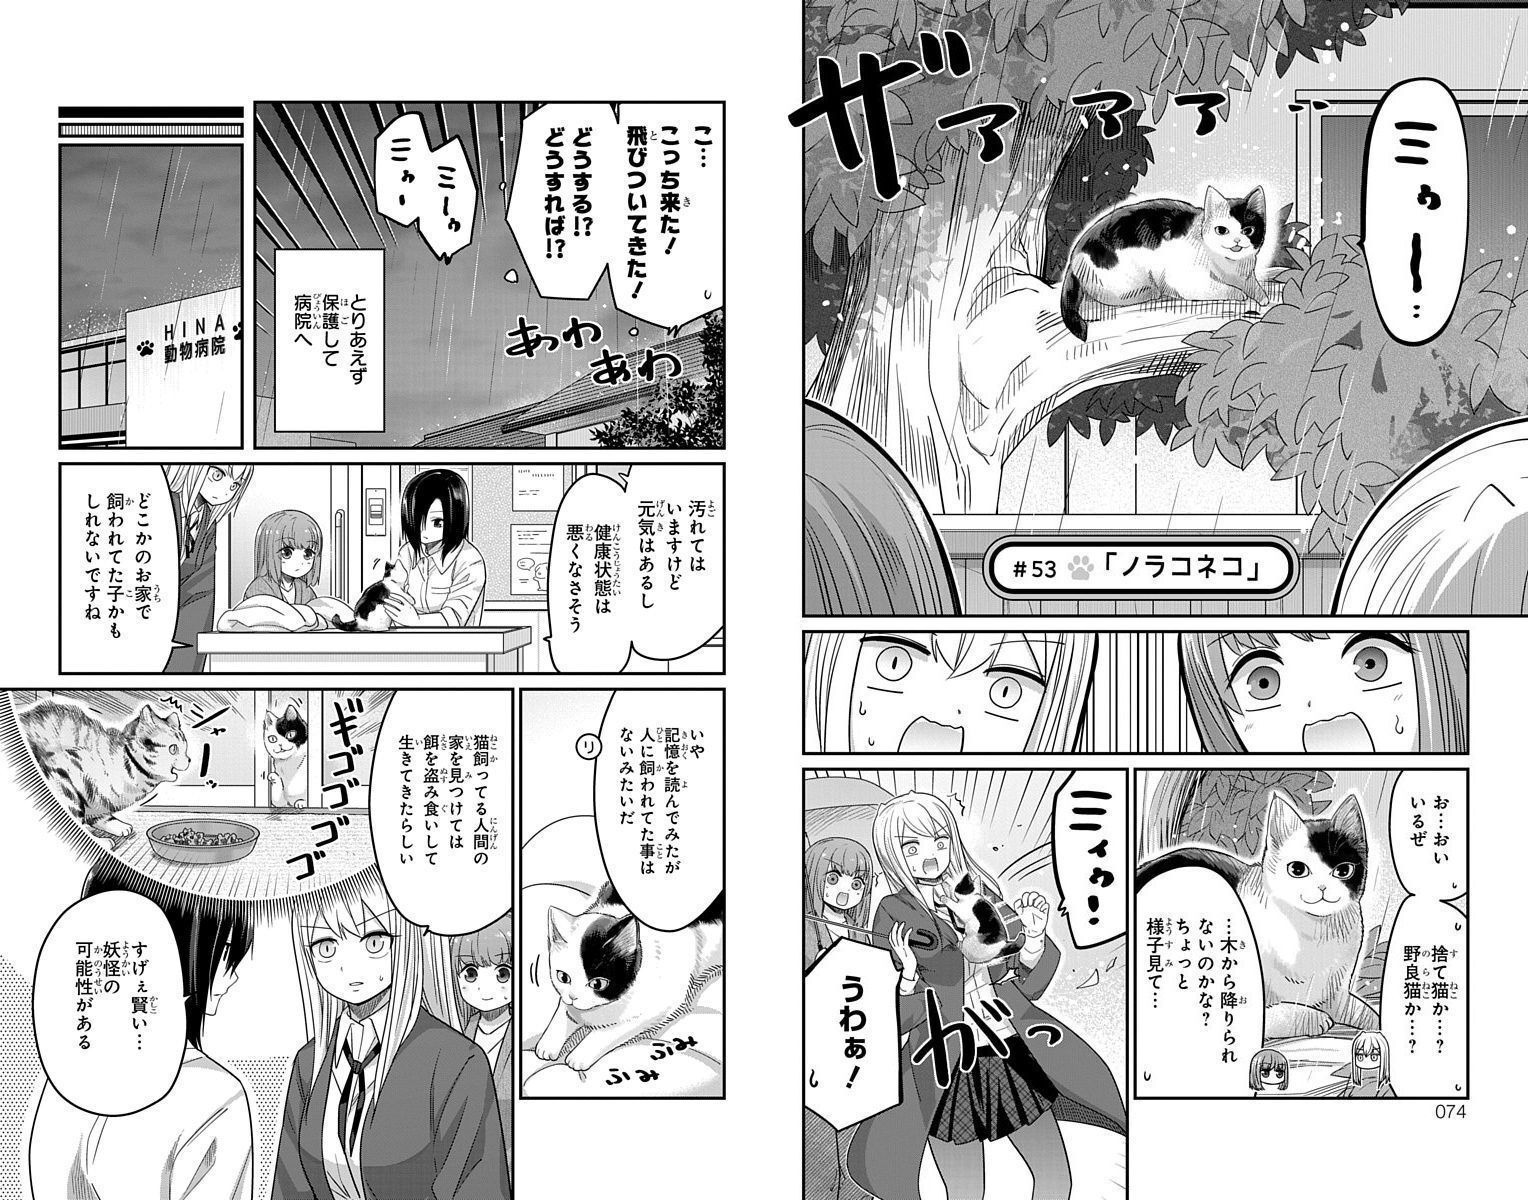 Kawaisugi Crisis - Chapter 53 - Page 1